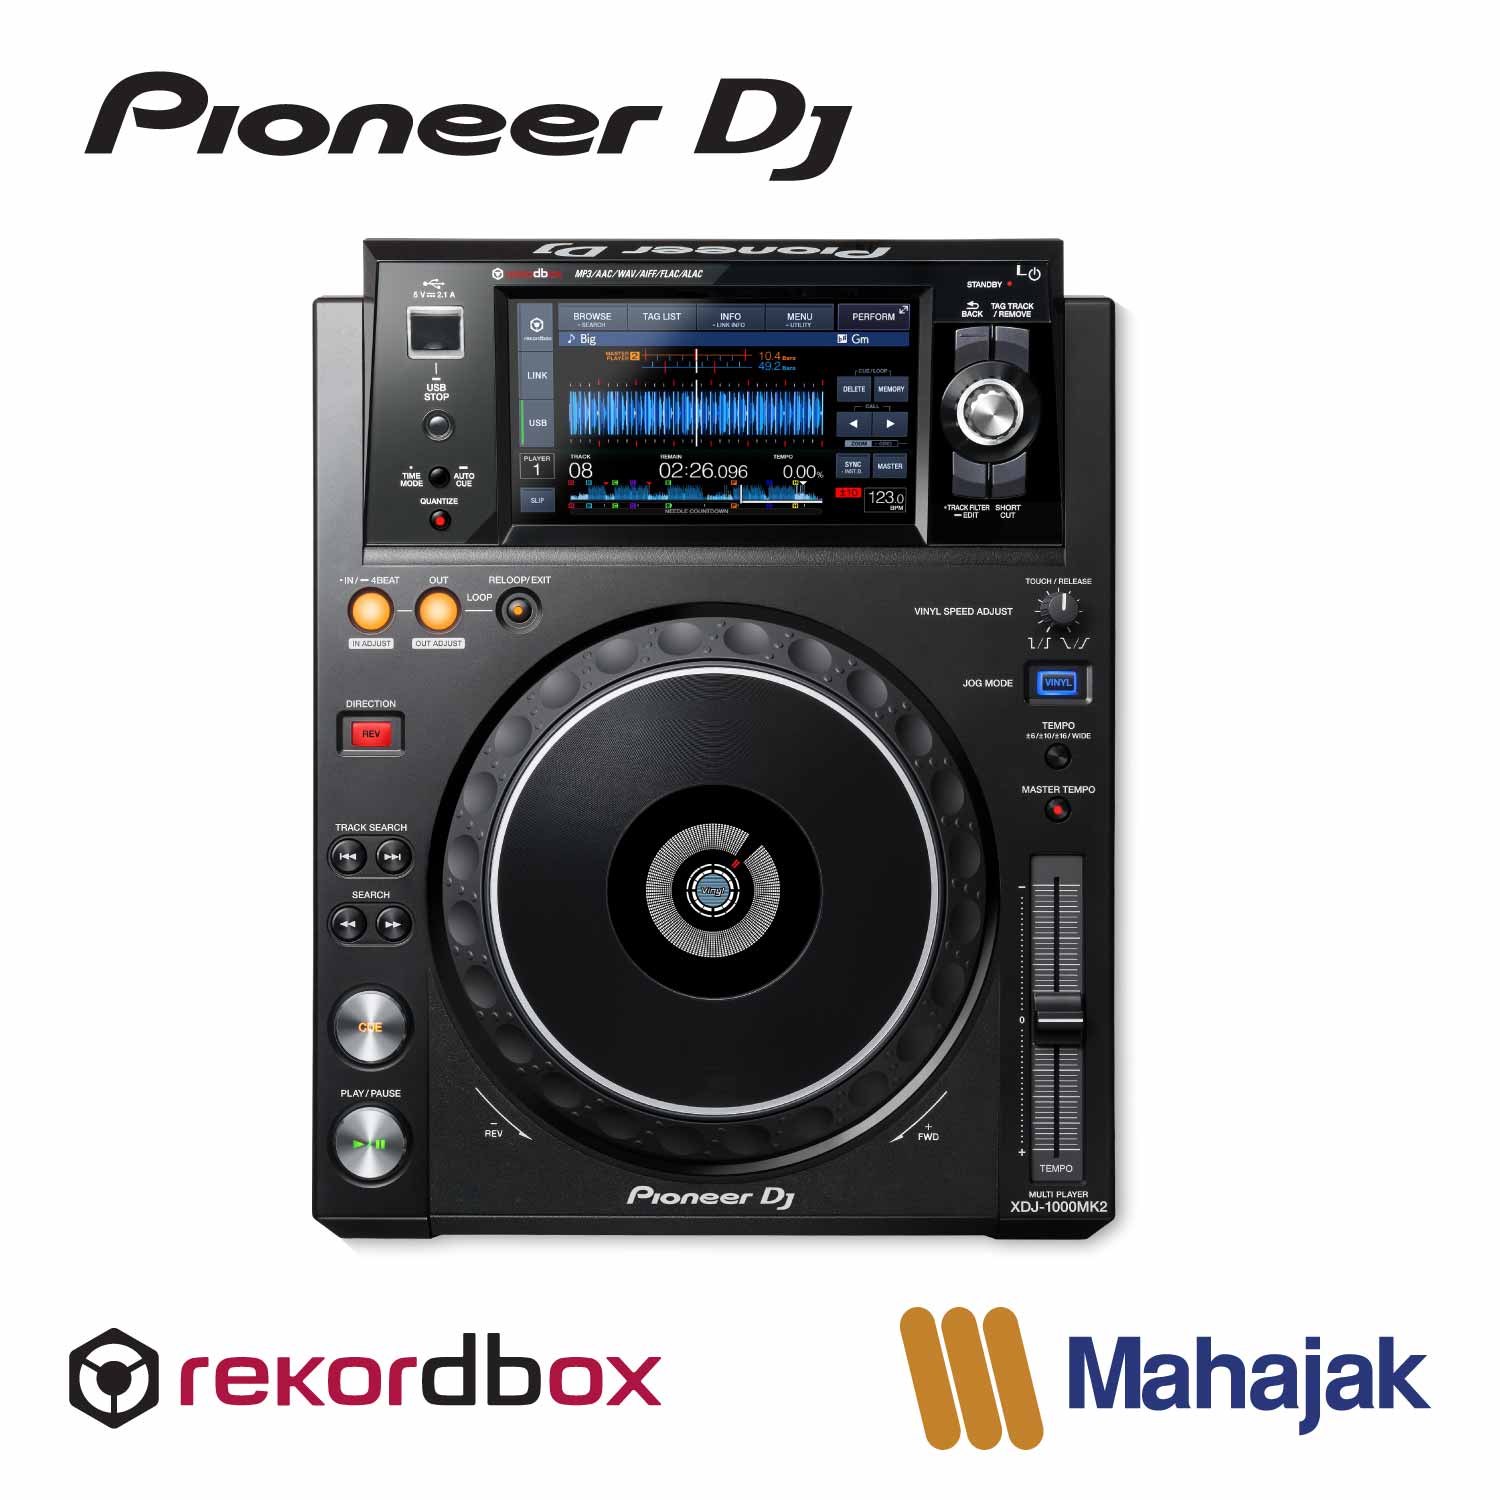 Pioneer DJ XDJ-1000MK2 | Rekordbox-ready digital deck